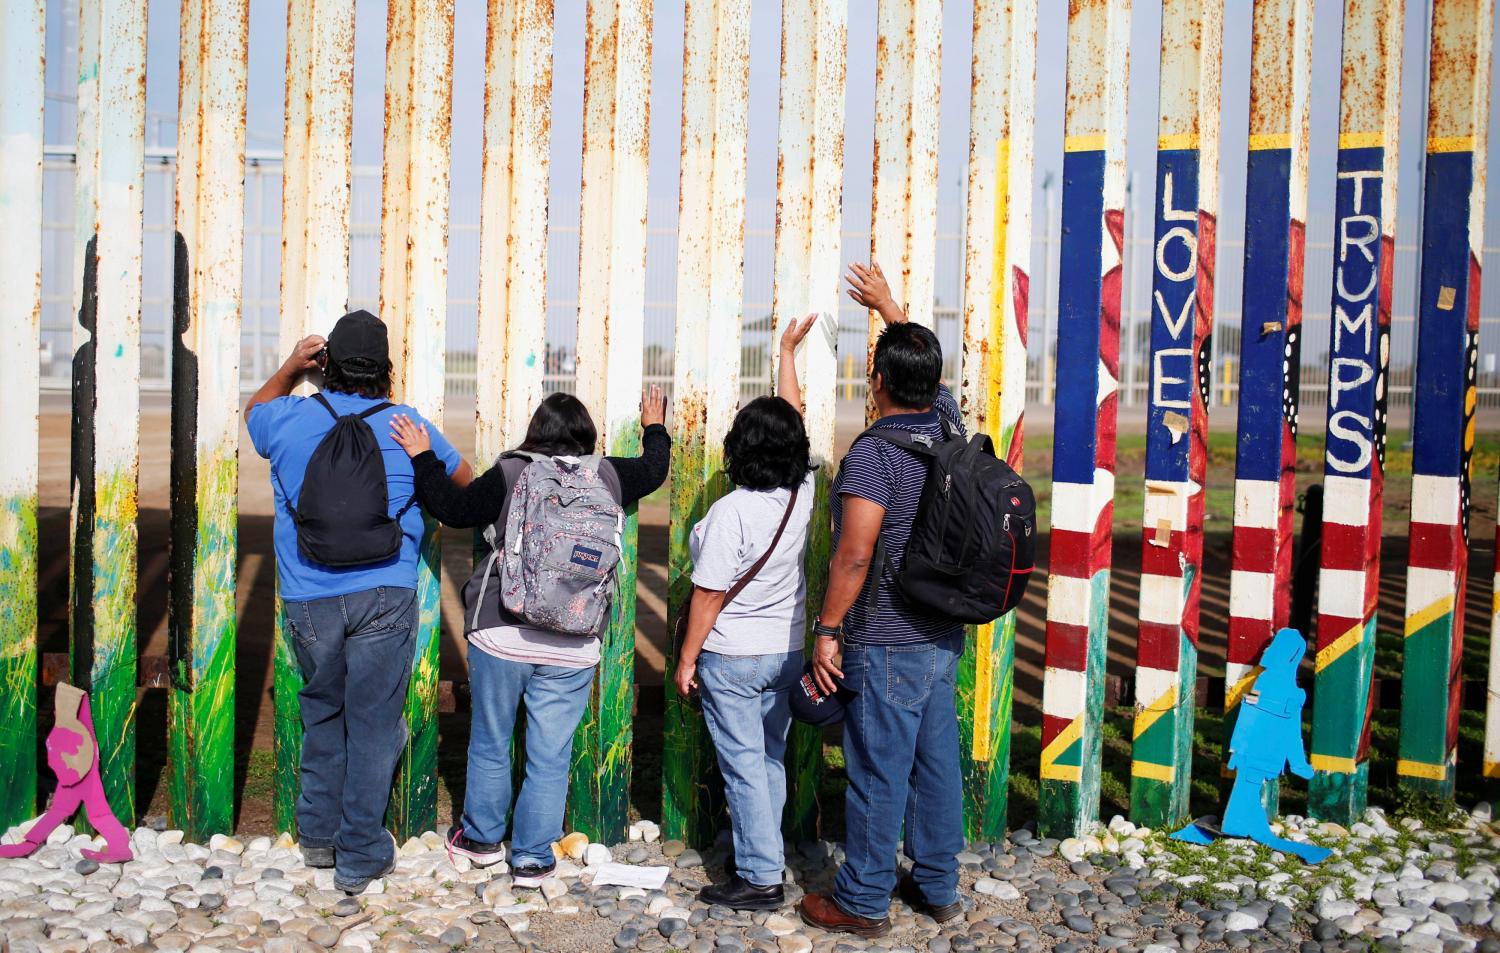 Una familia mexicana saluda a sus familiares que no ven hace 15 años porque se encuentran del otro lado, en Estados Unidos. REUTERS